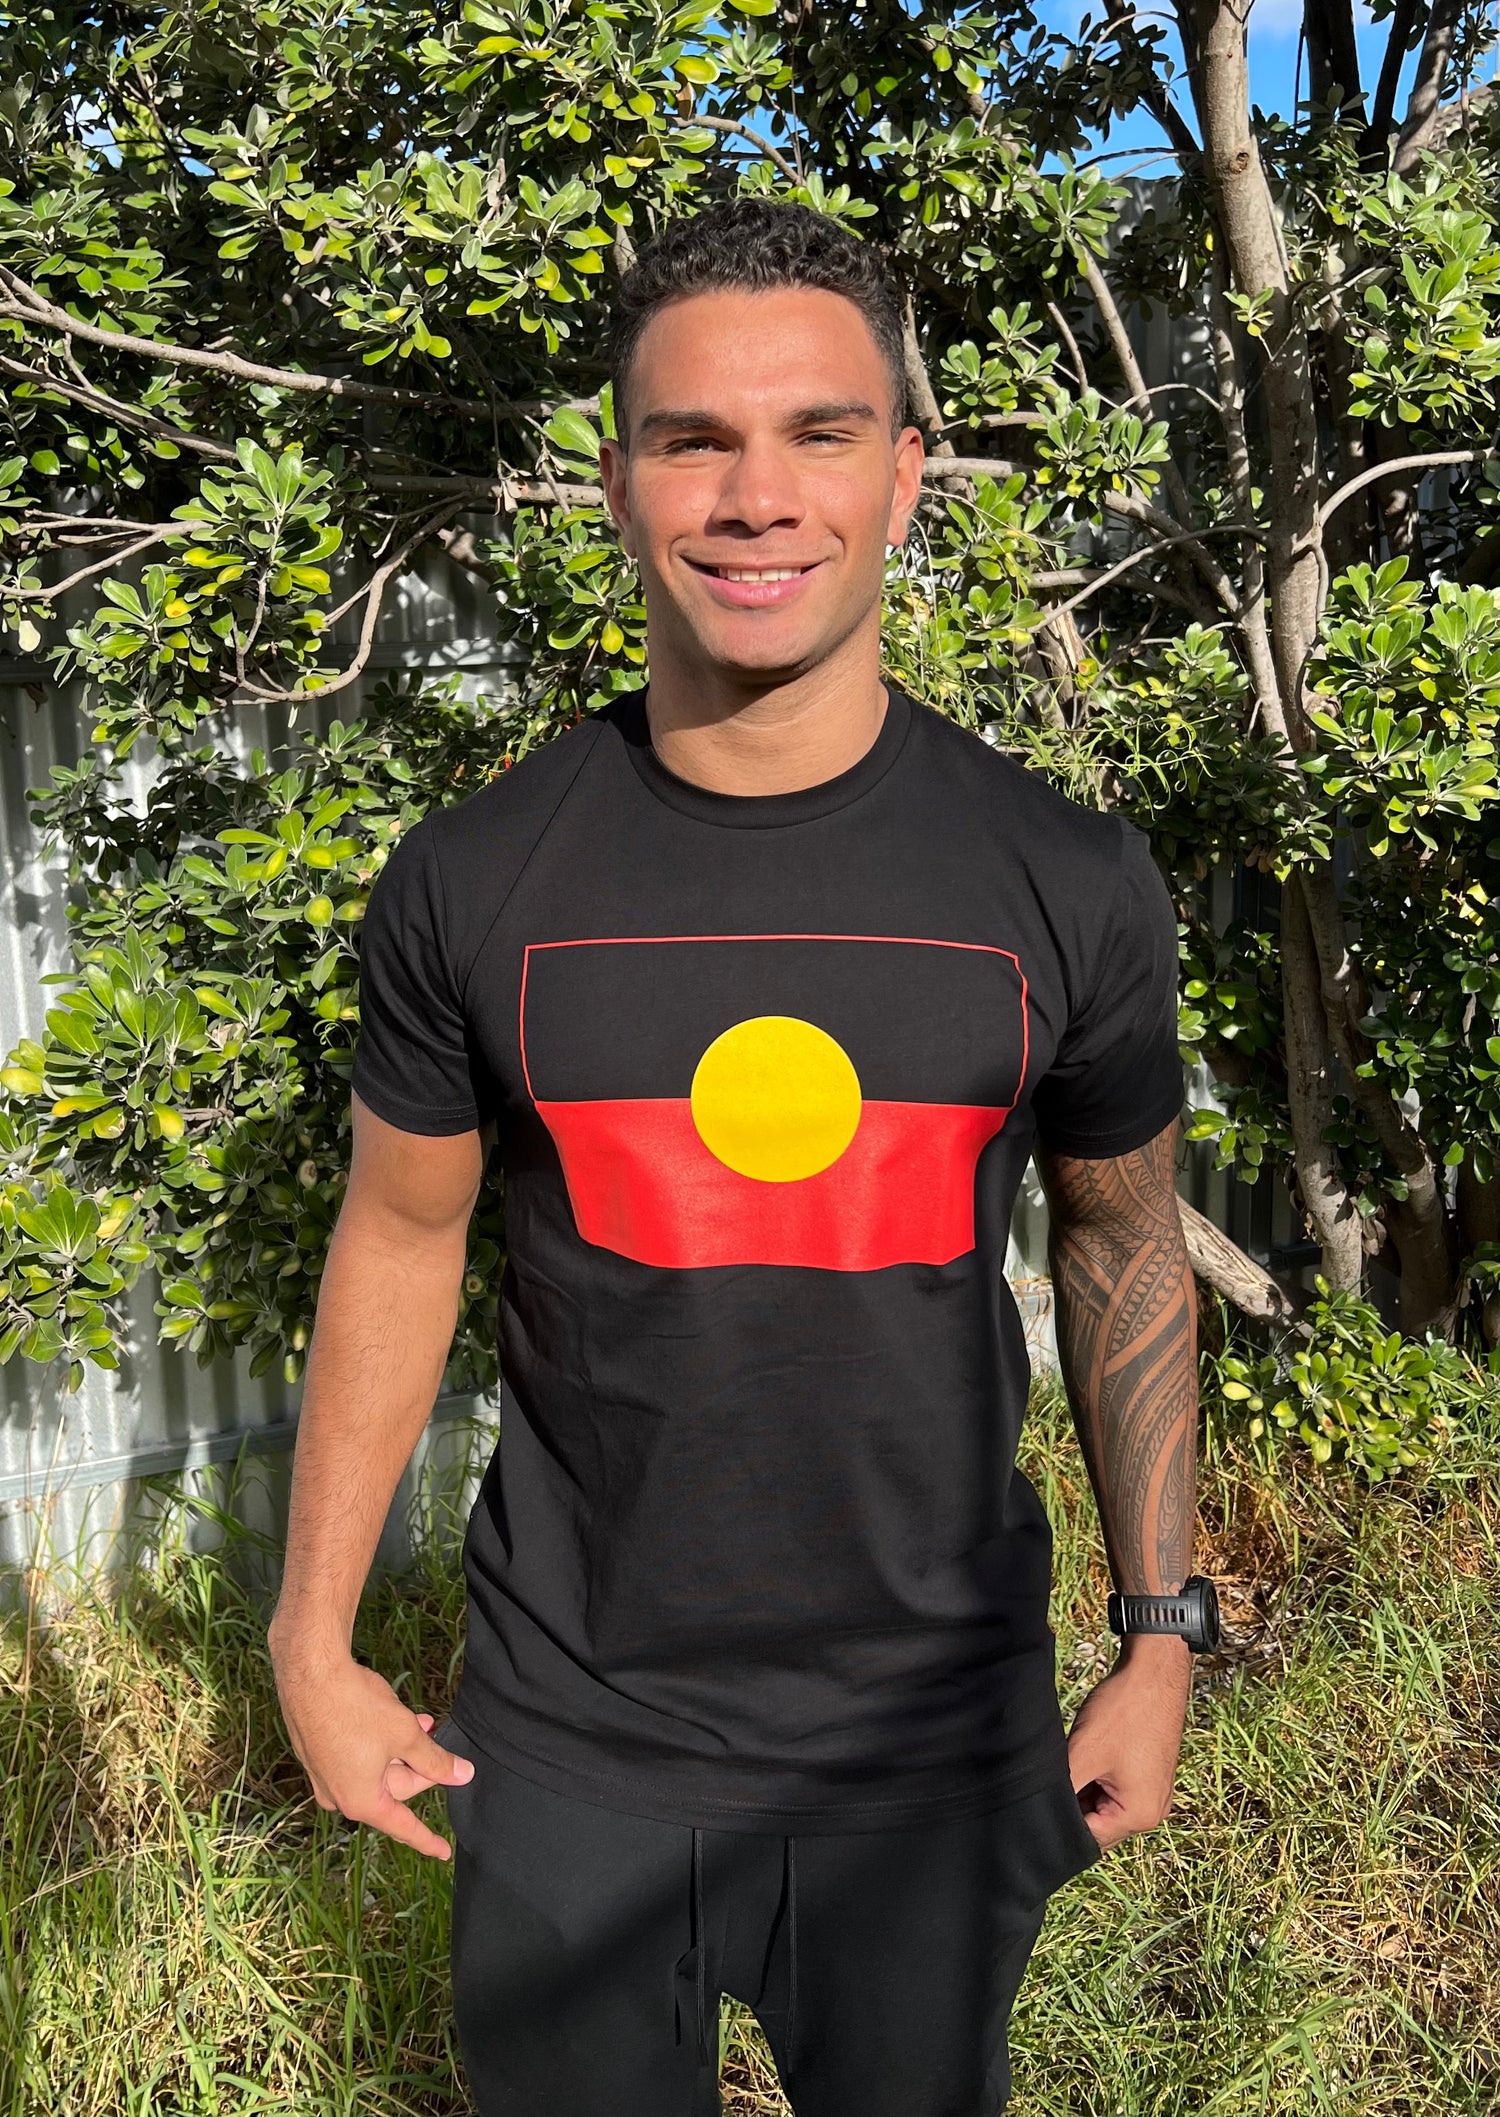 Aboriginal Flag T-Shirt